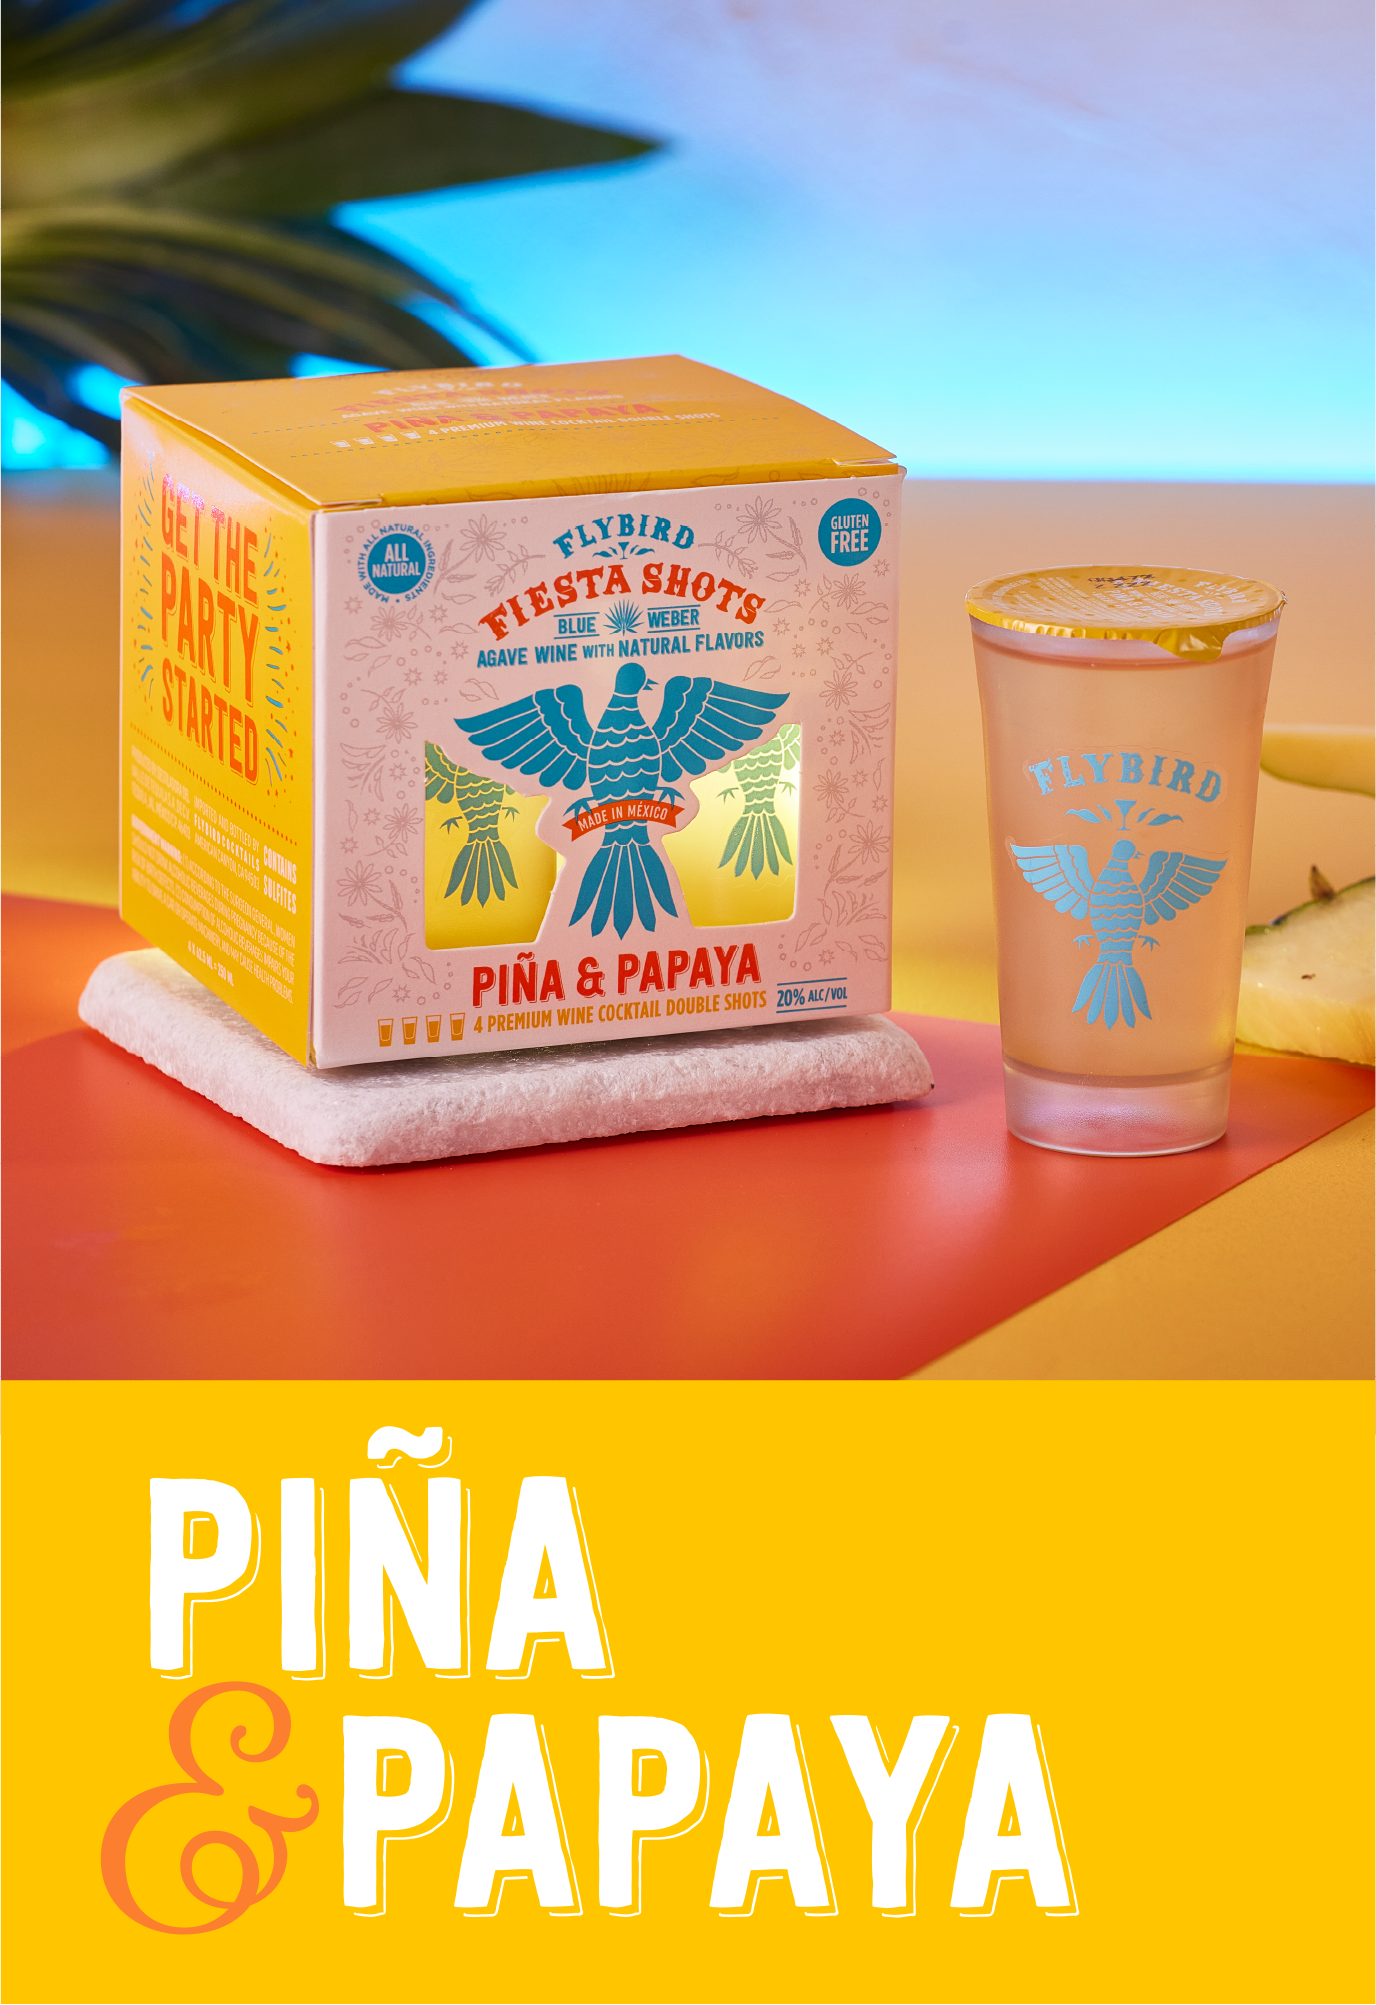 Flybird Piña & Papaya Fiesta Shots